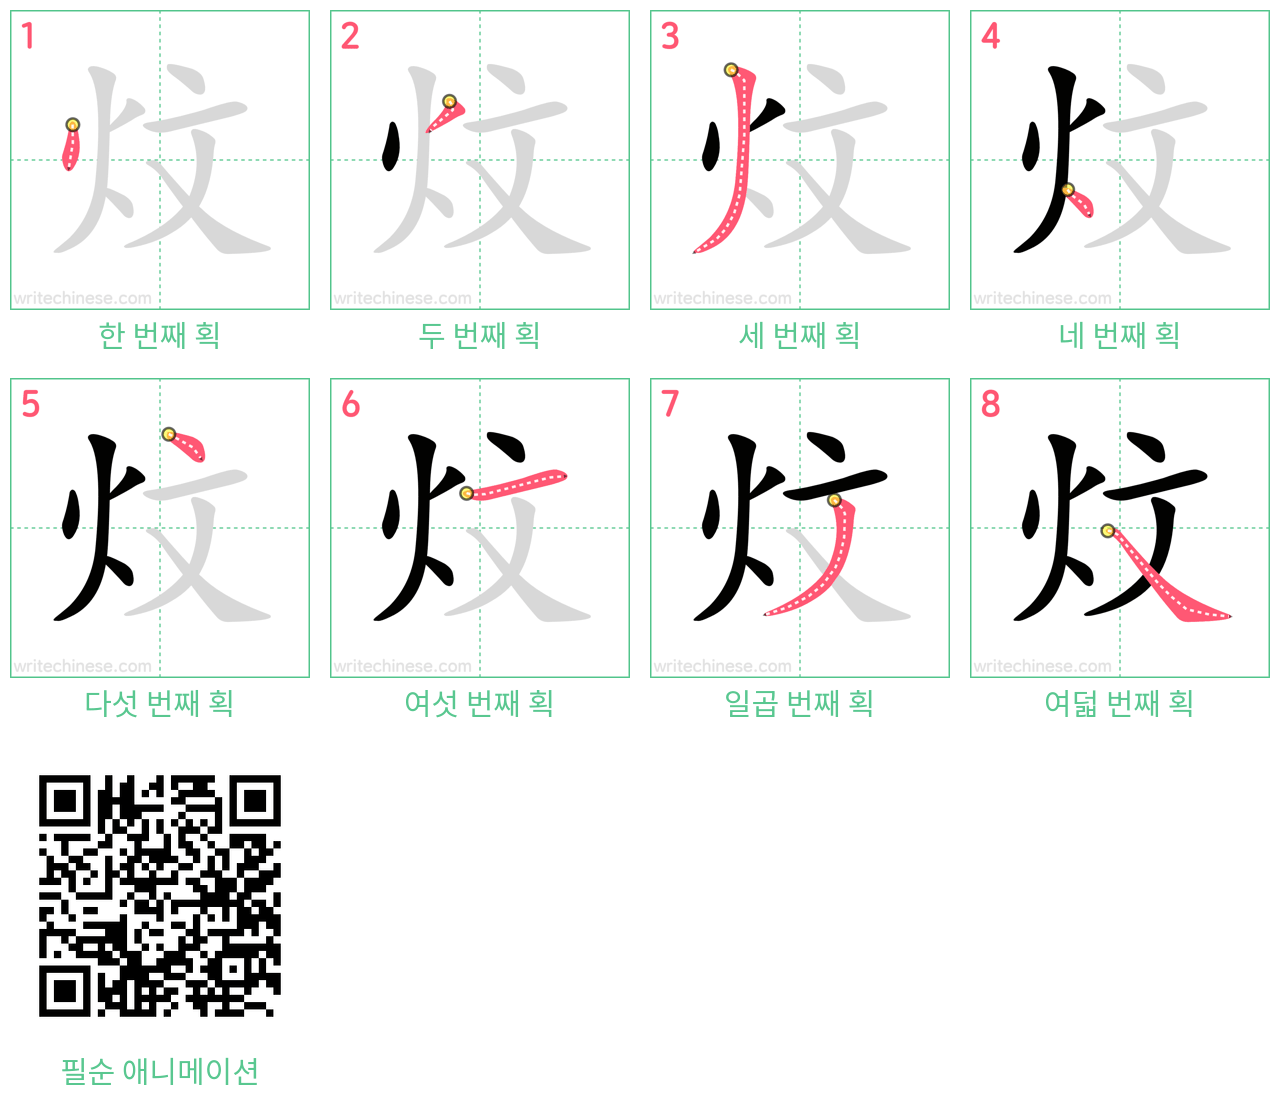 炆 step-by-step stroke order diagrams